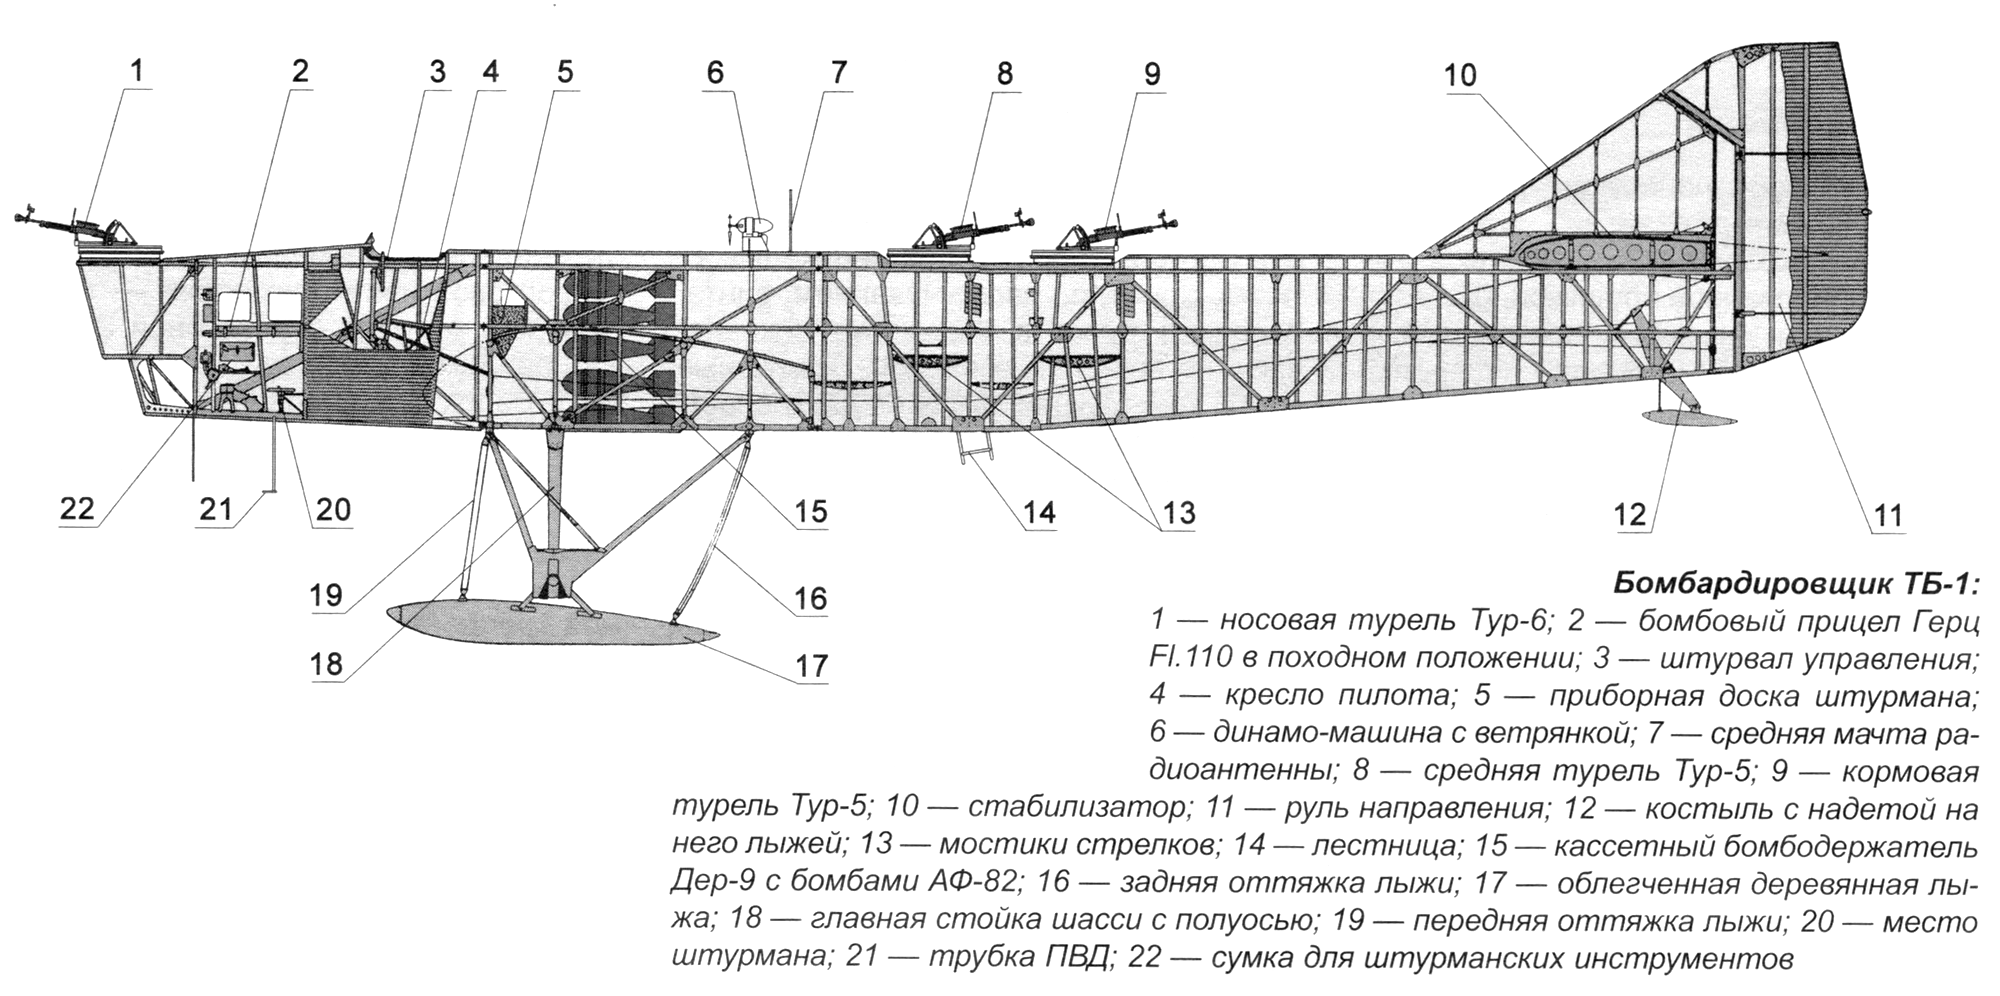 Истребитель як-3: характеристики и чертежи самолета, вооружение, описание конструкции